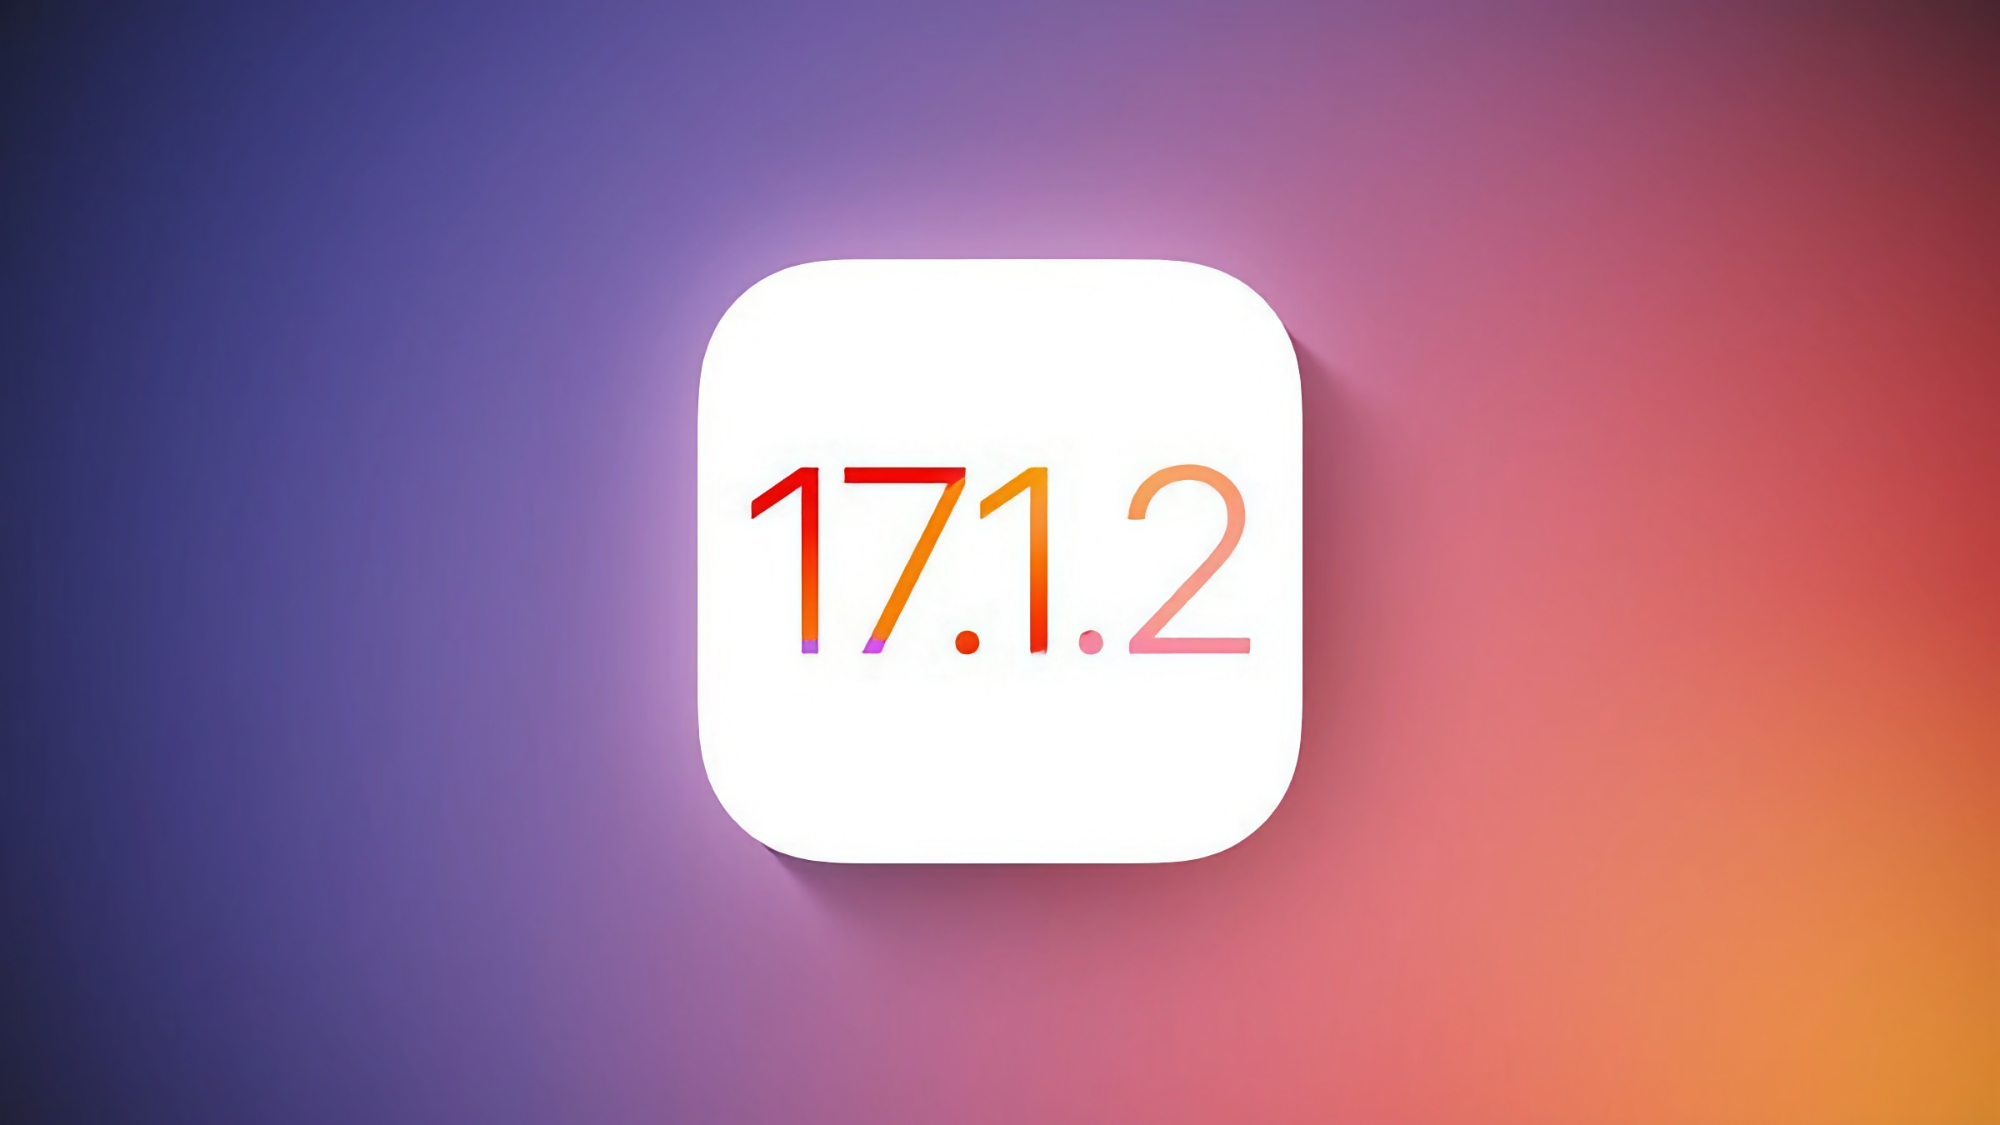 Apple ha lanzado iOS 17.1.2 con correcciones de errores para los usuarios de iPhone